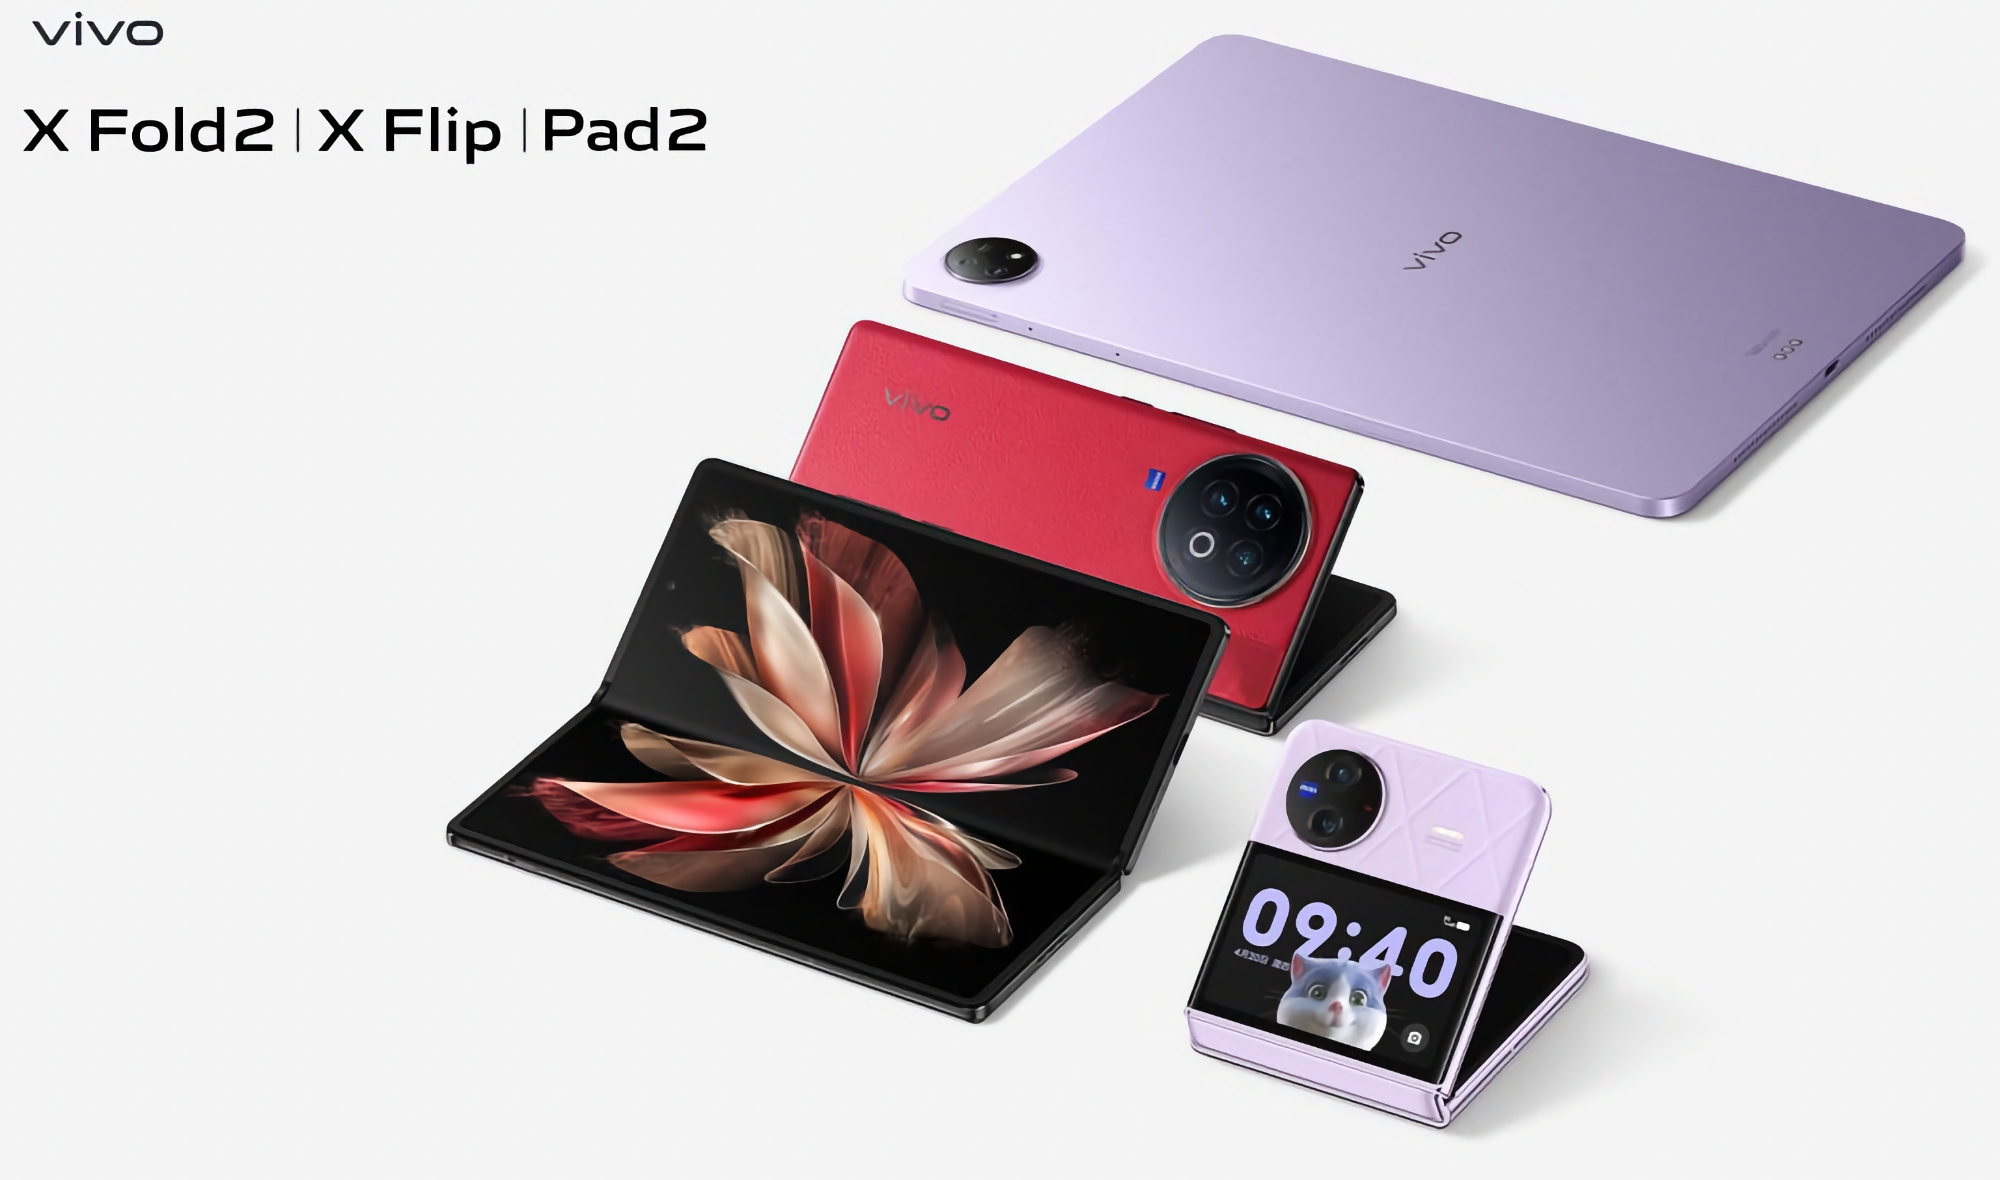 Nie tylko składane smartfony vivo X Fold 2 i vivo X Flip: 20 kwietnia vivo zaprezentuje również tablet vivo Pad 2